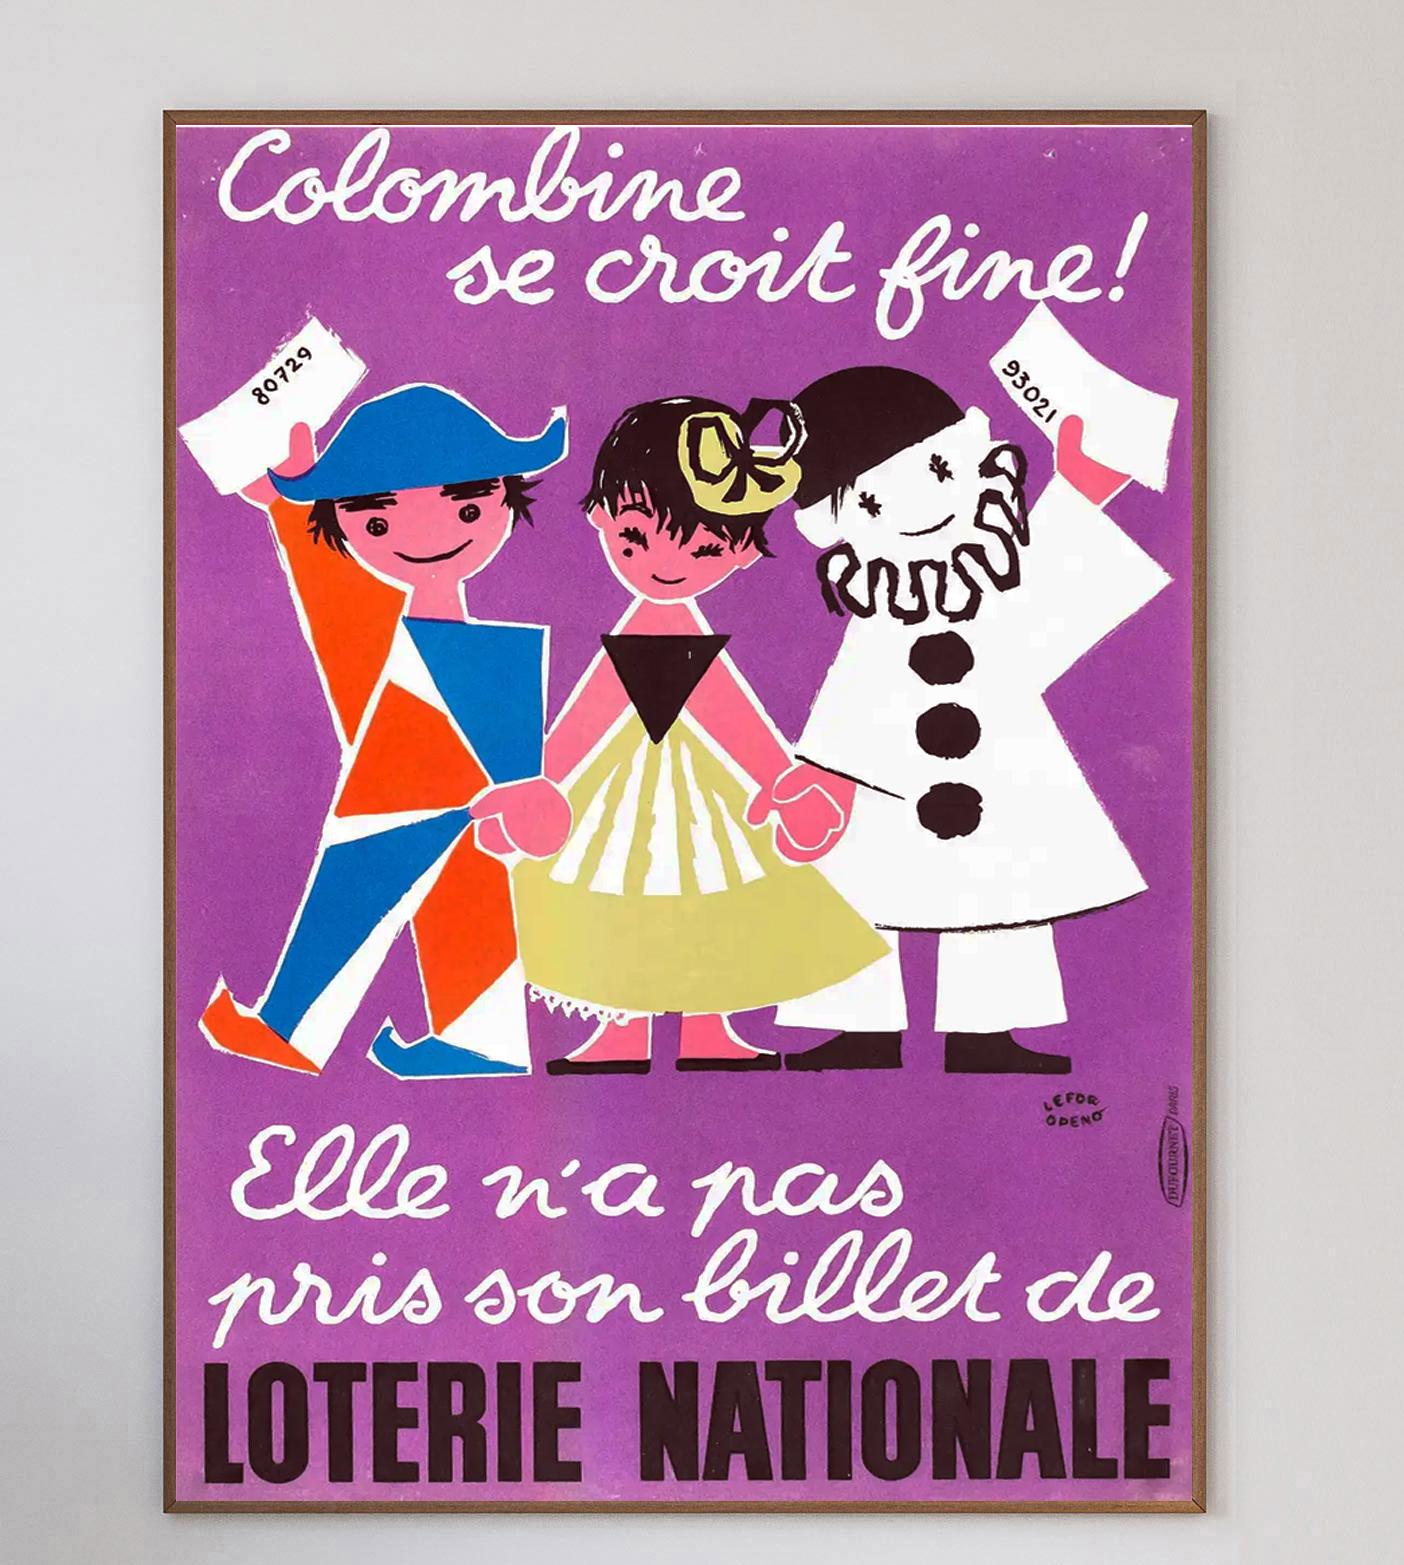 Cette belle affiche colorée date de 1957 et fait la promotion de la Loterie Nationale. Intitulée 